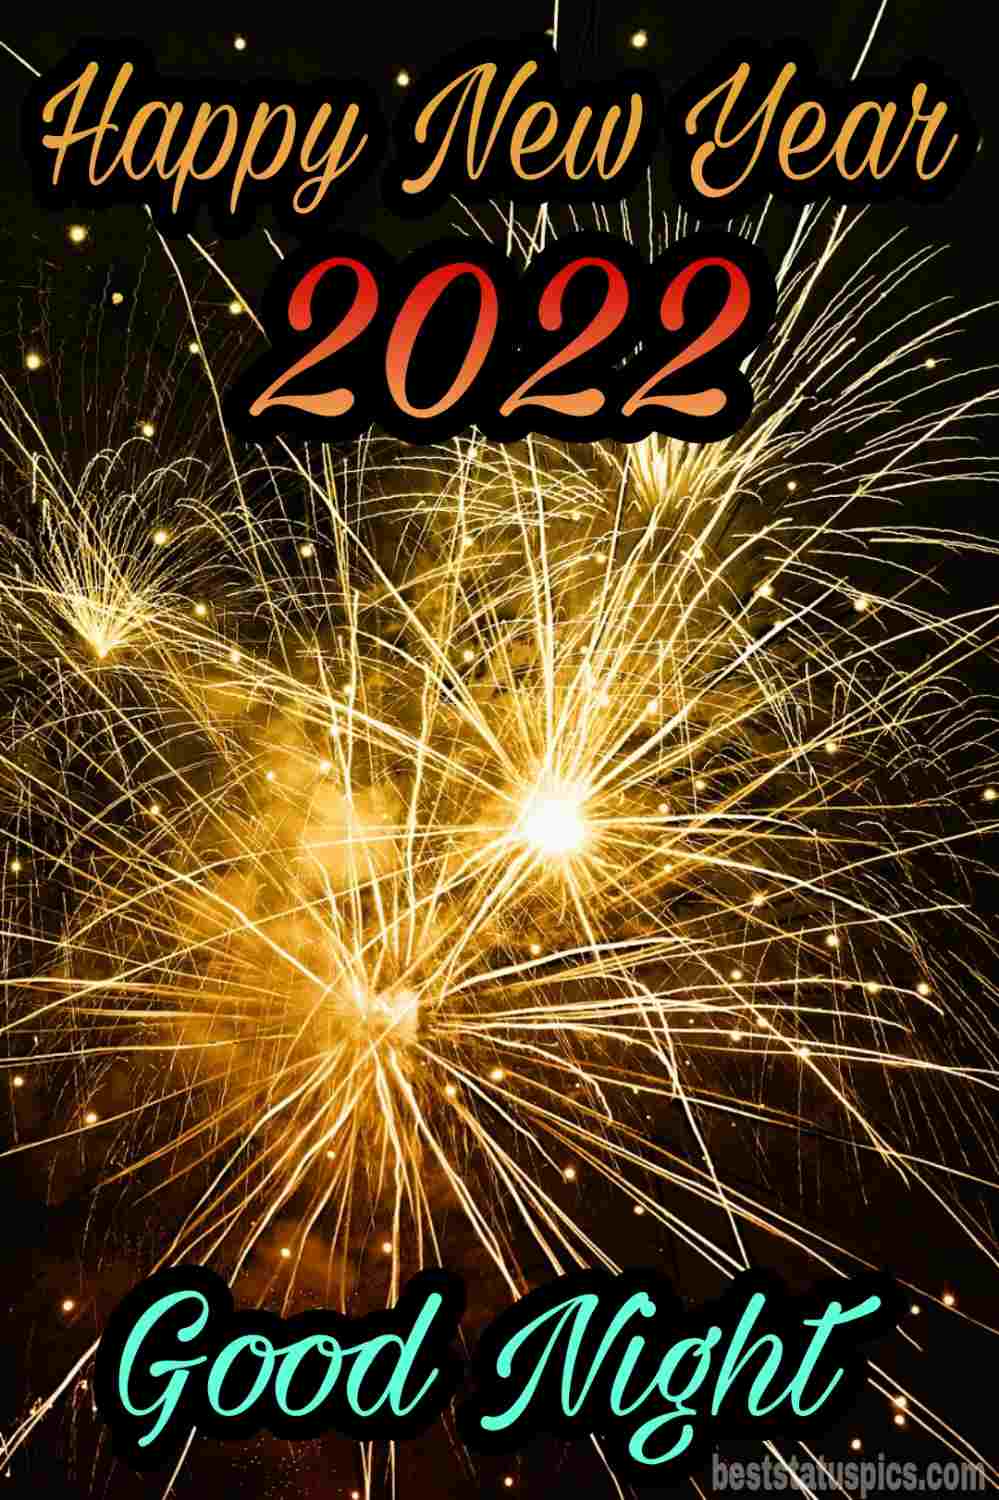 Bella buona notte Felice anno nuovo 2022 augura immagini HD con fuochi d'artificio per gli amici